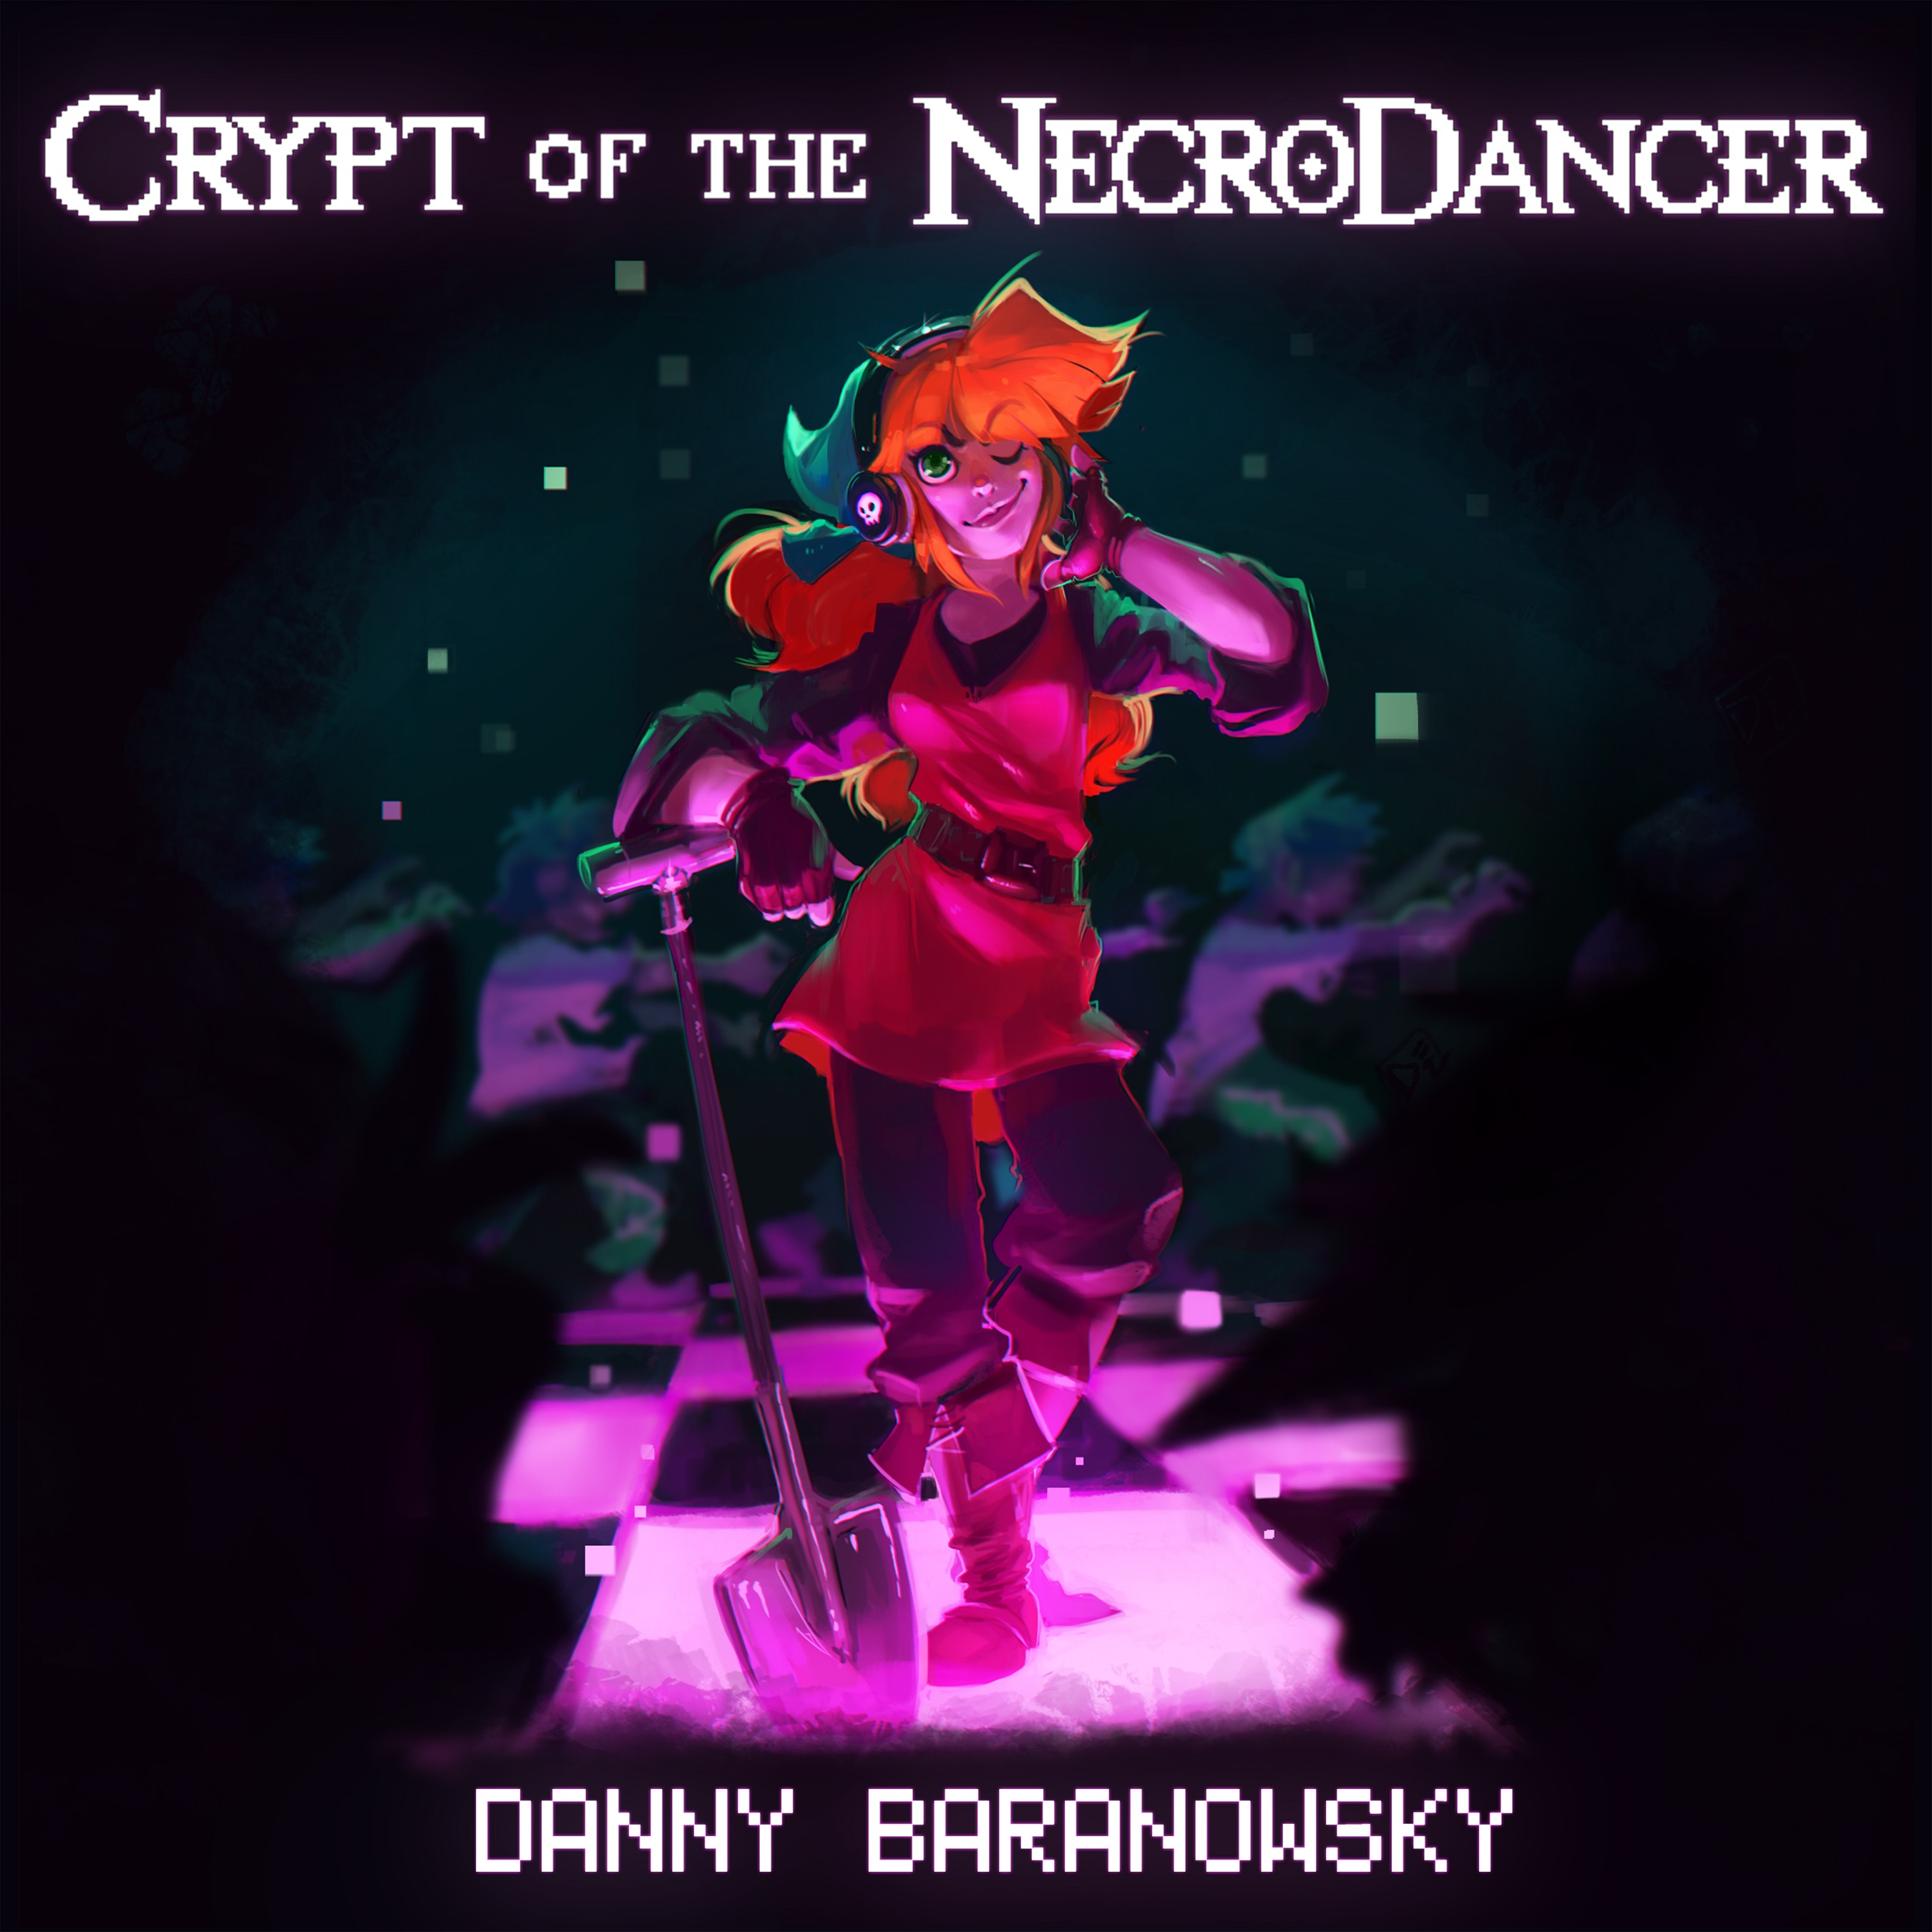 Crypt of the Necrodancer Original Danny Baranowsky Soundtrack screenshot